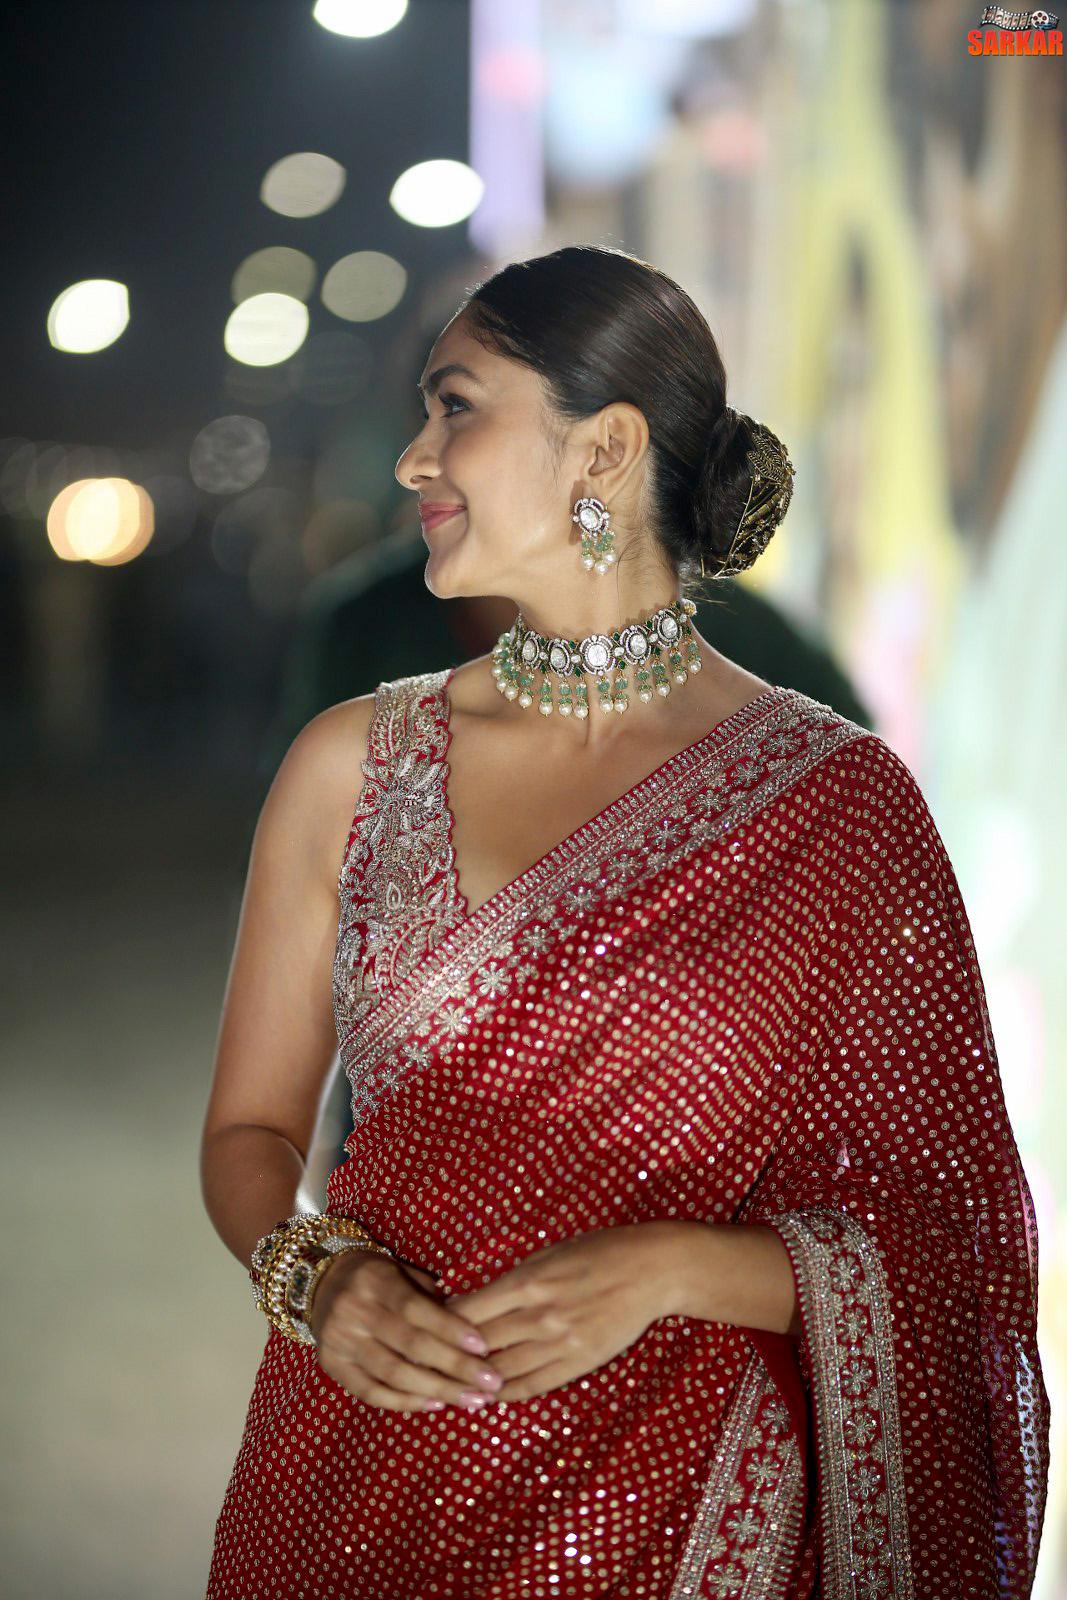 Actress Mrunal Thakur